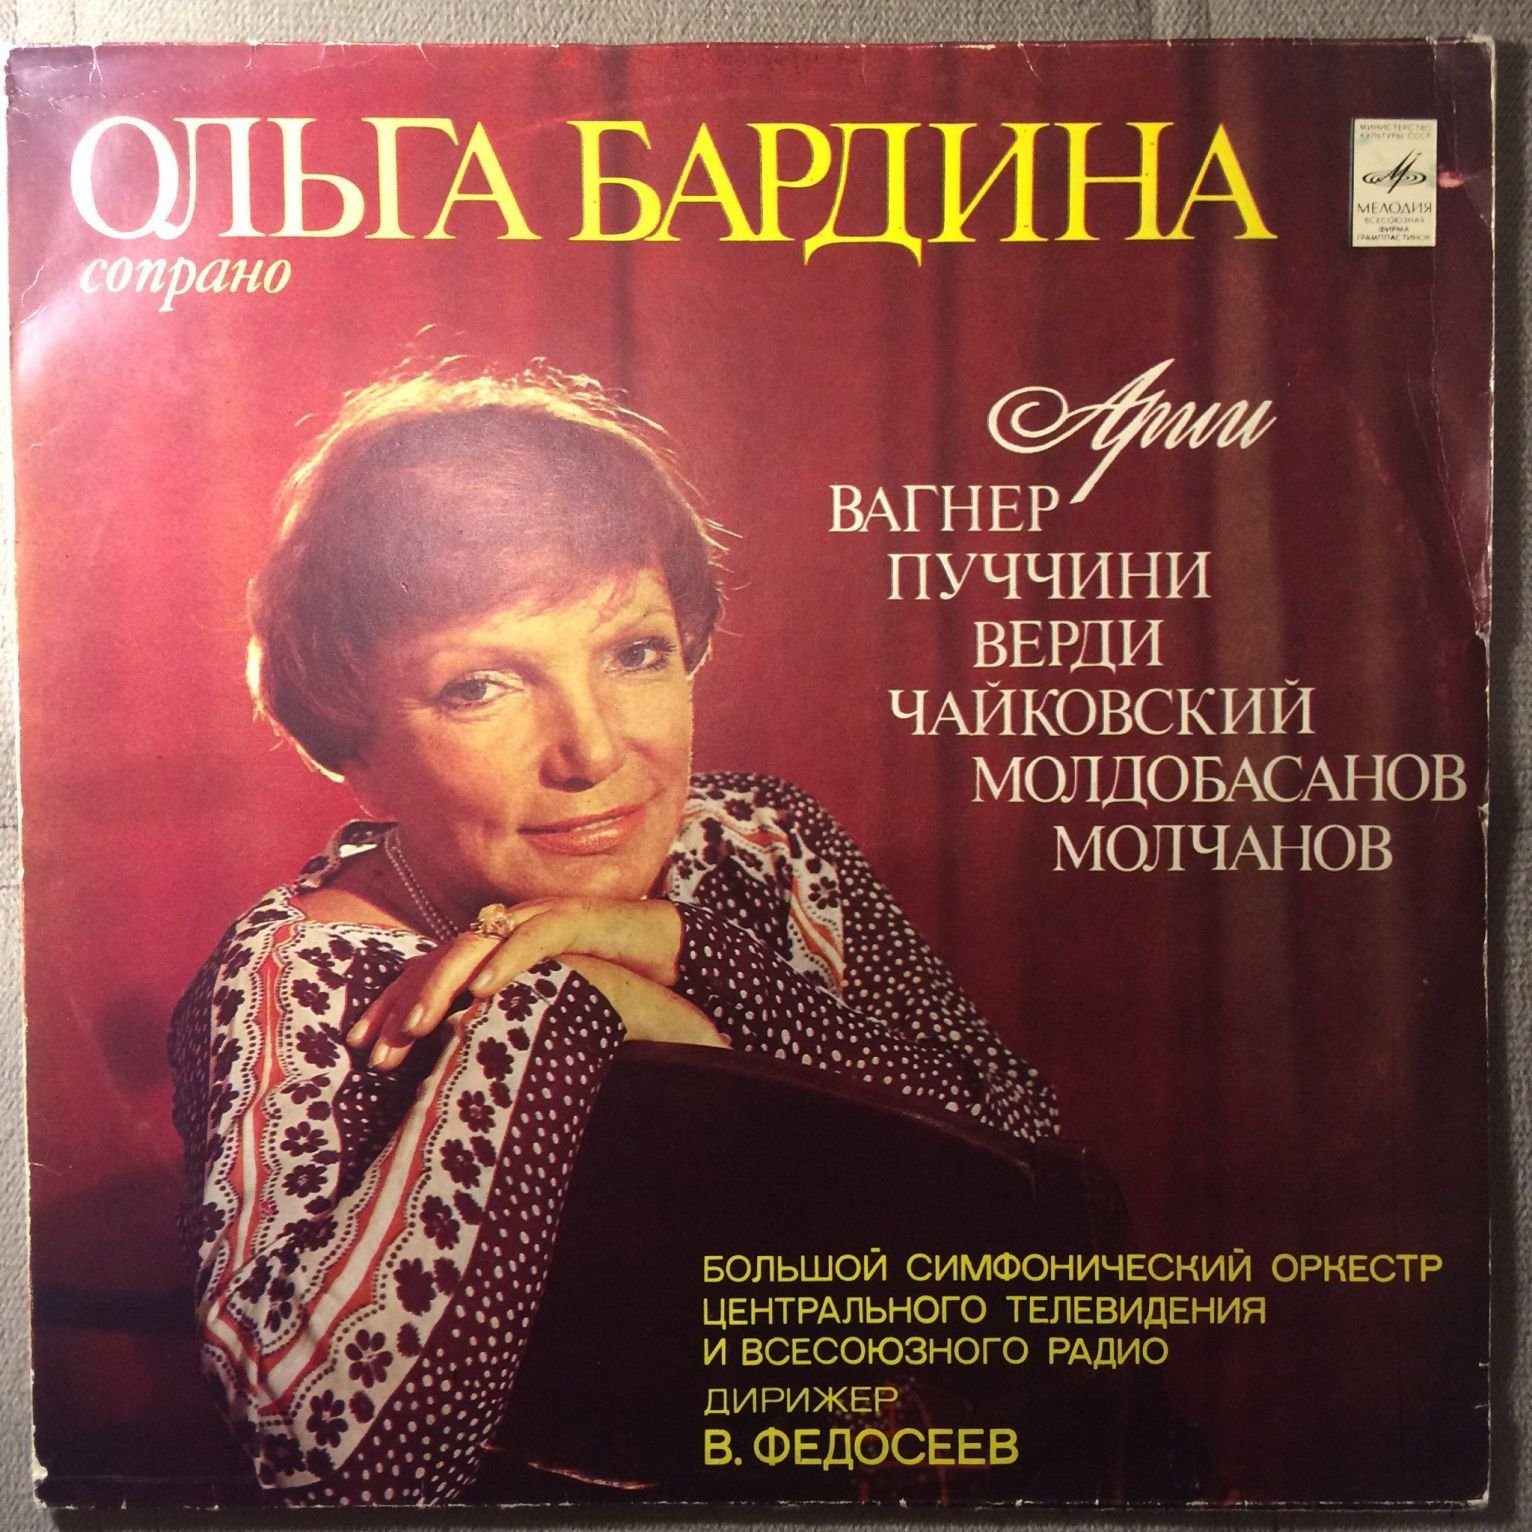 БАРДИНА Ольга (сопрано).